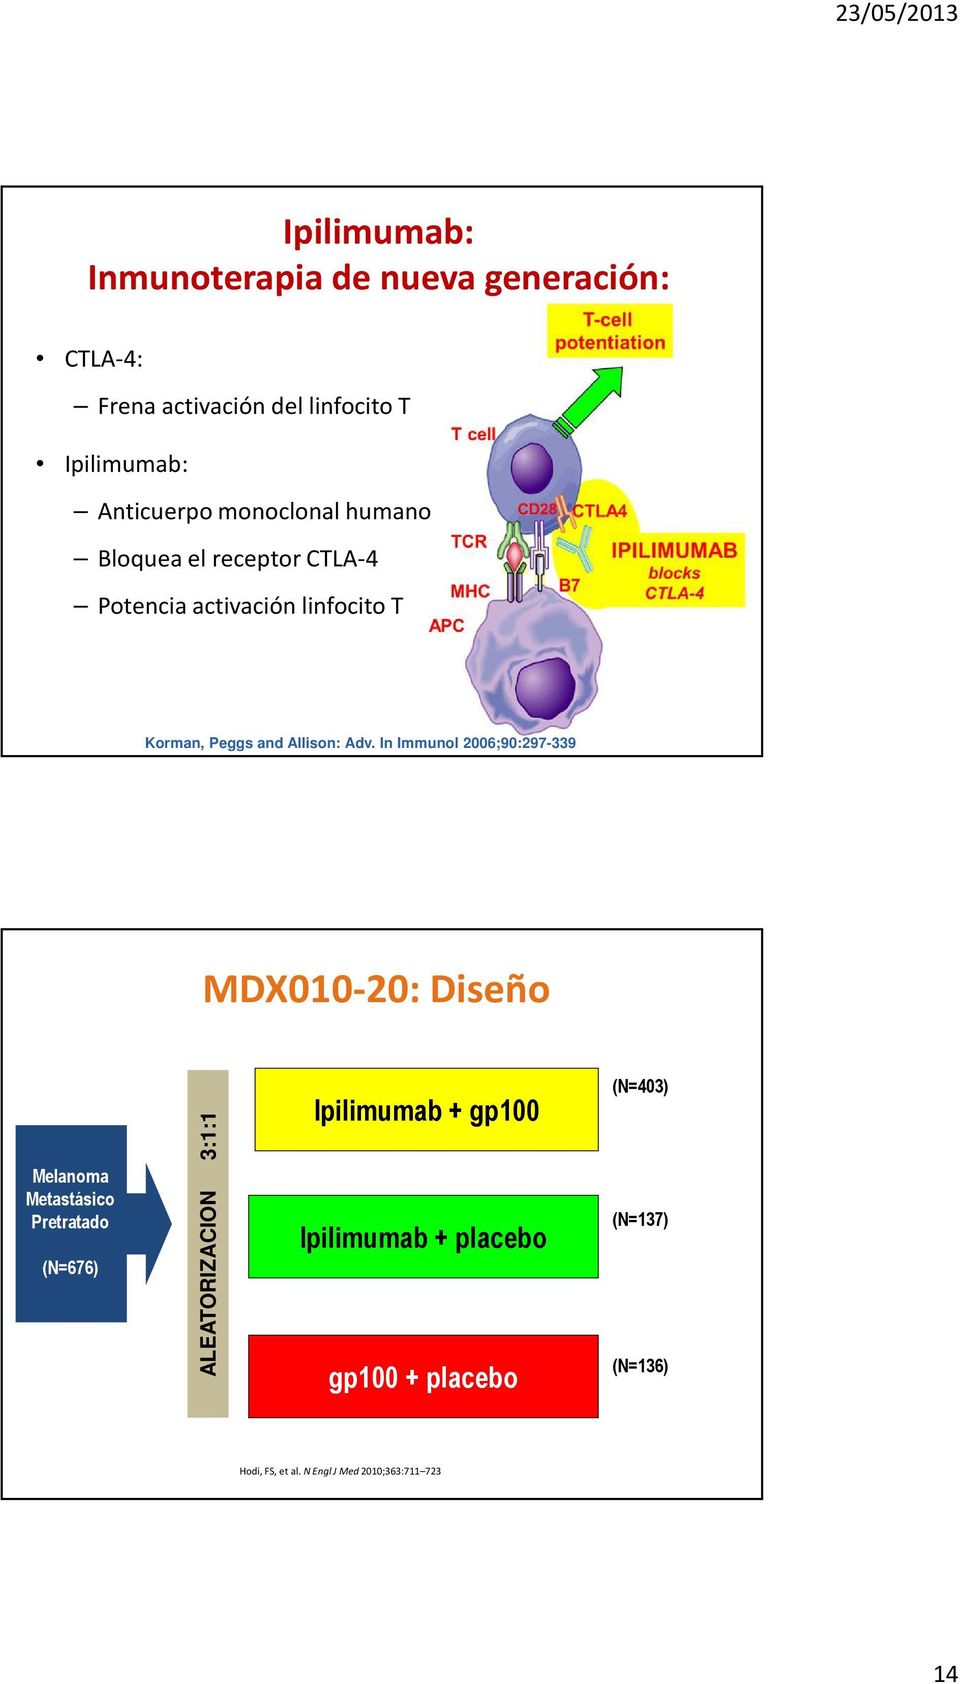 In Immunol 2006;90:297-339 27 MDX010-20: Diseño Melanoma Metastásico Pretratado (N=676) ALEATORIZACION 3:1:1